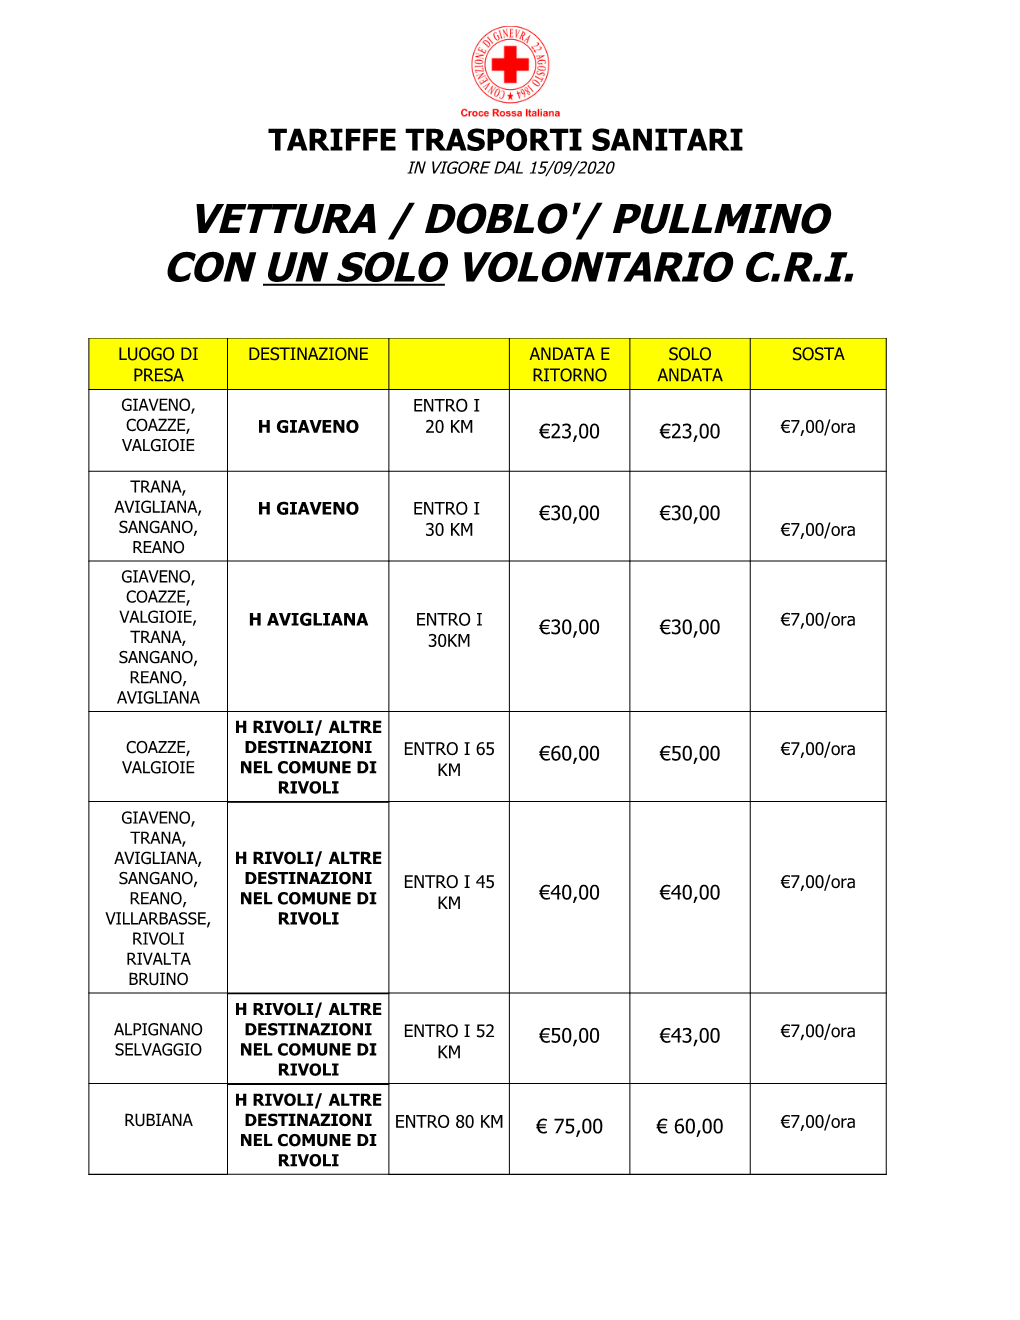 Tariffe Trasporti Sanitari in Vigore Dal 15/09/2020 Vettura / Doblo'/ Pullmino Con Un Solo Volontario C.R.I